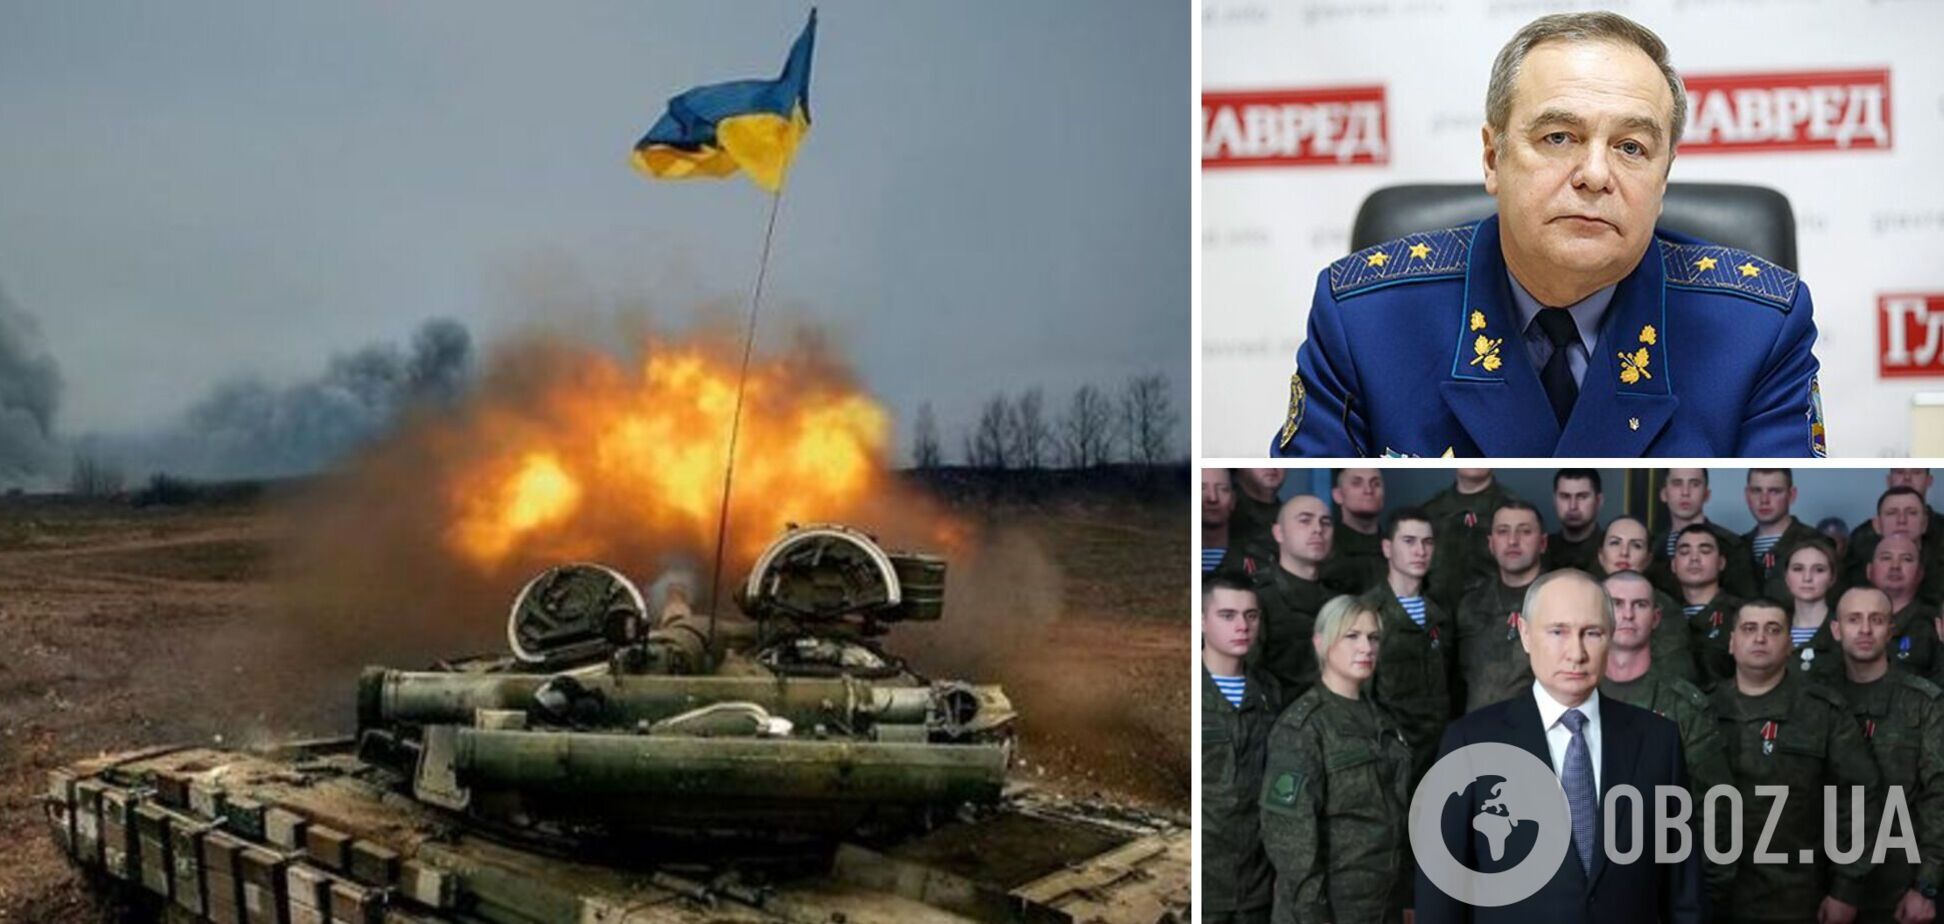 Генерал Романенко: Запад поможет Украине в последний раз? Как мы можем выиграть эту войну. Интервью